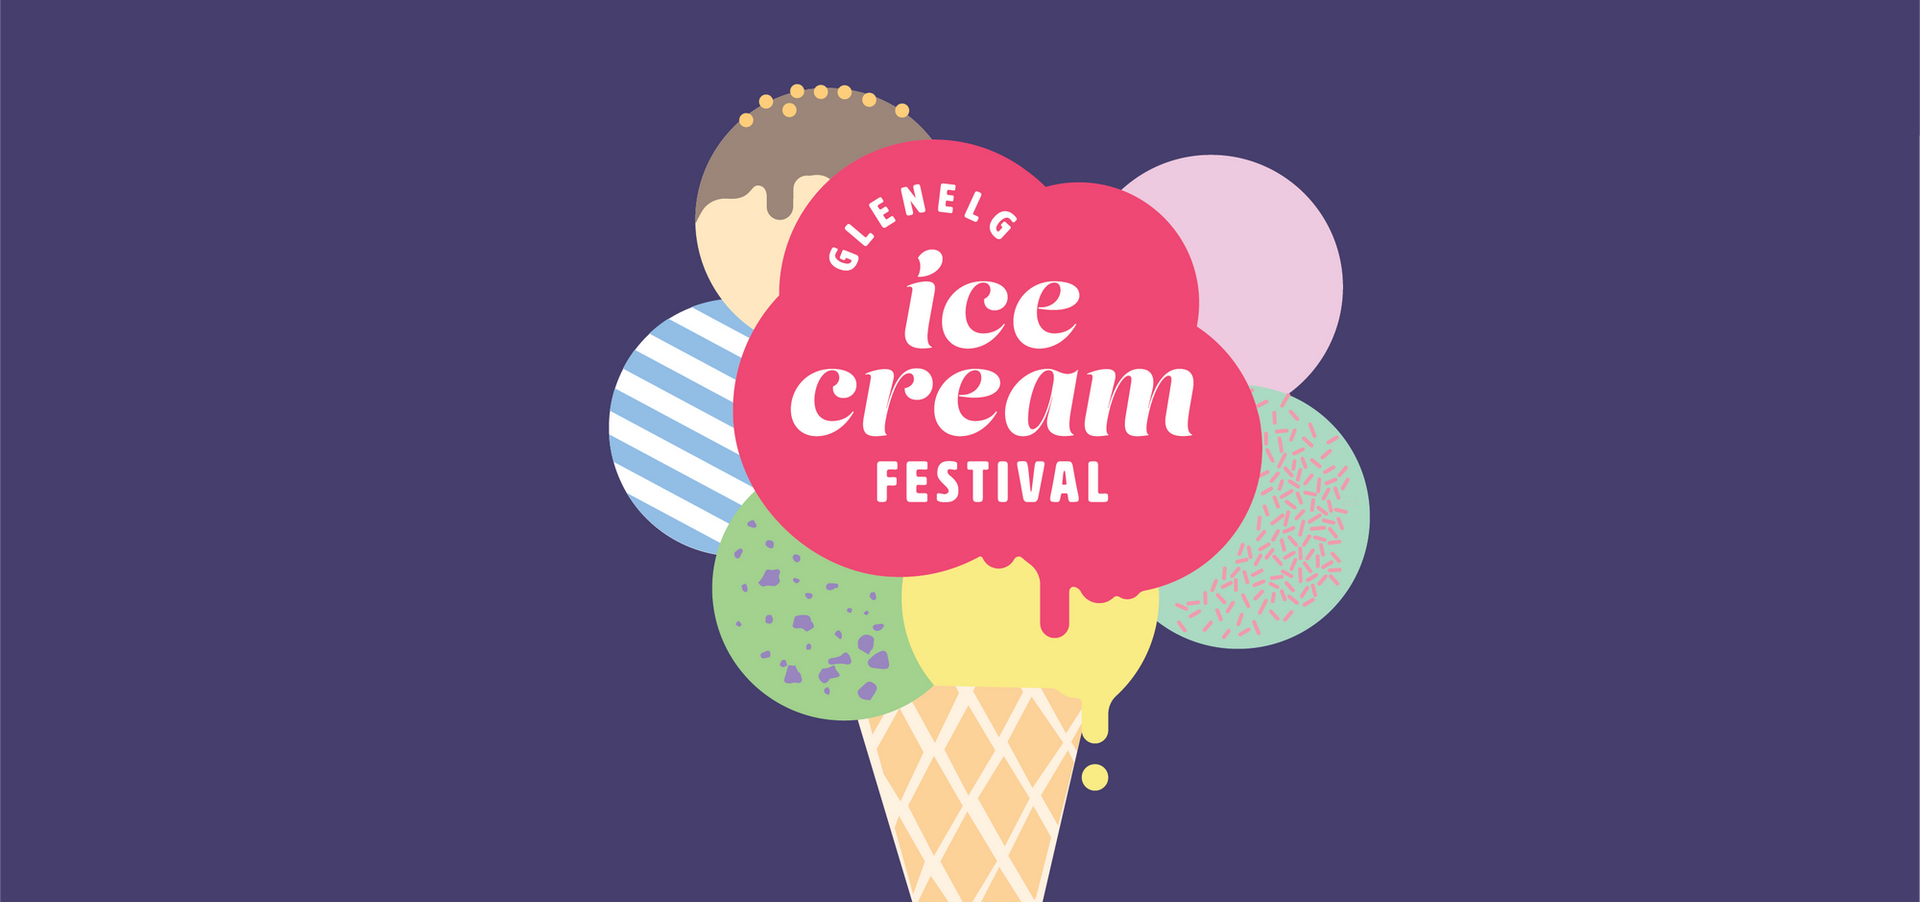 Glenelg Ice Cream Festival Jetty Road Glenelg